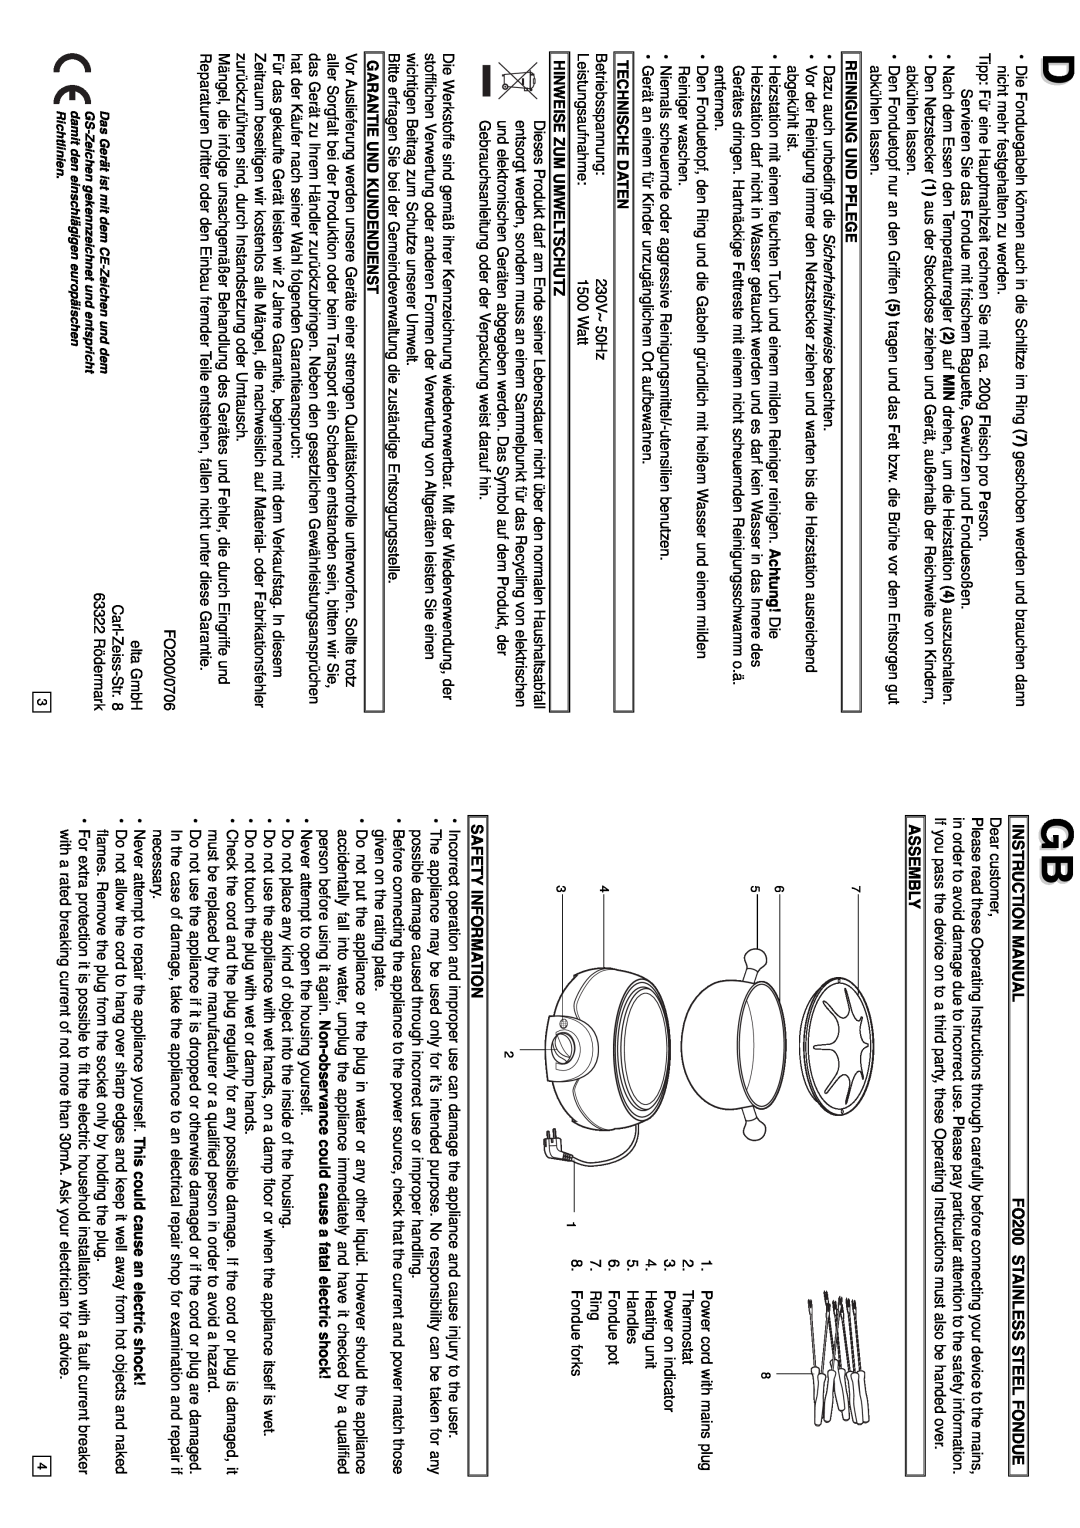 Elta Instruction Manual, FO200 STAINLESS STEEL FONDUE, Reinigung Und Pflege, Technische Daten, Assembly 